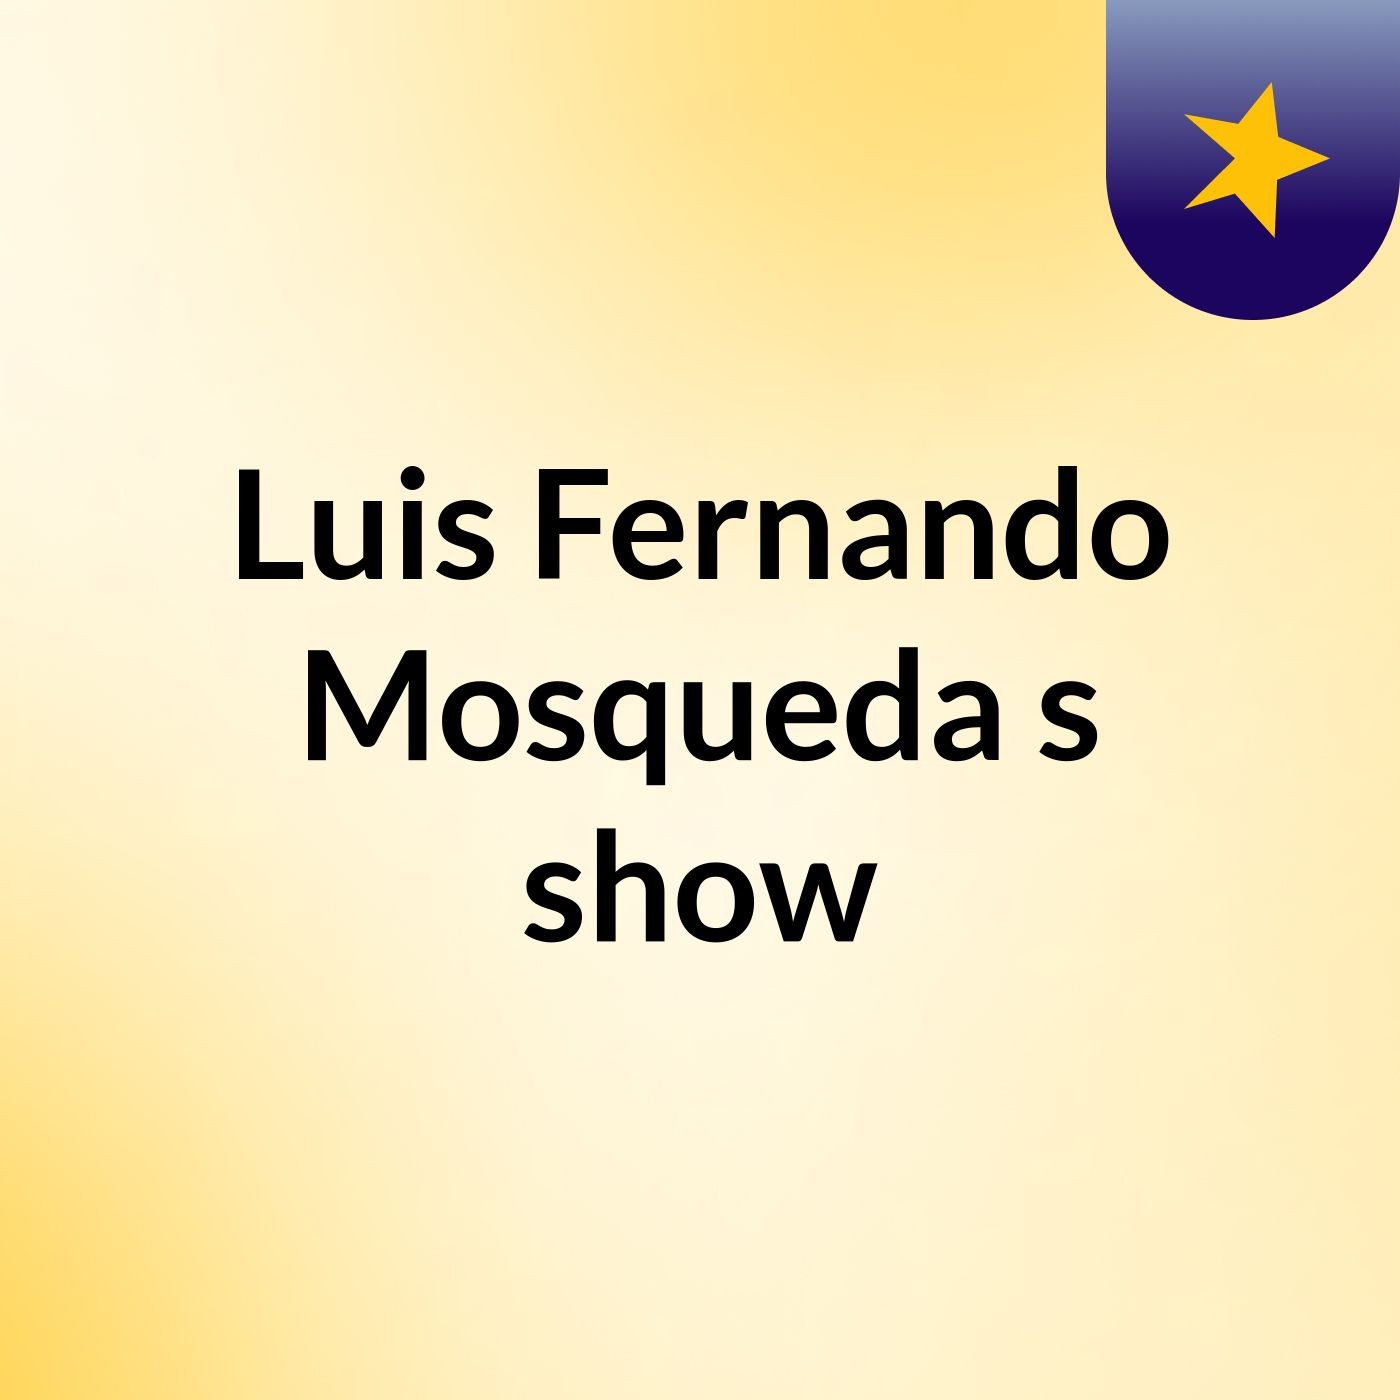 Luis Fernando Mosqueda's show